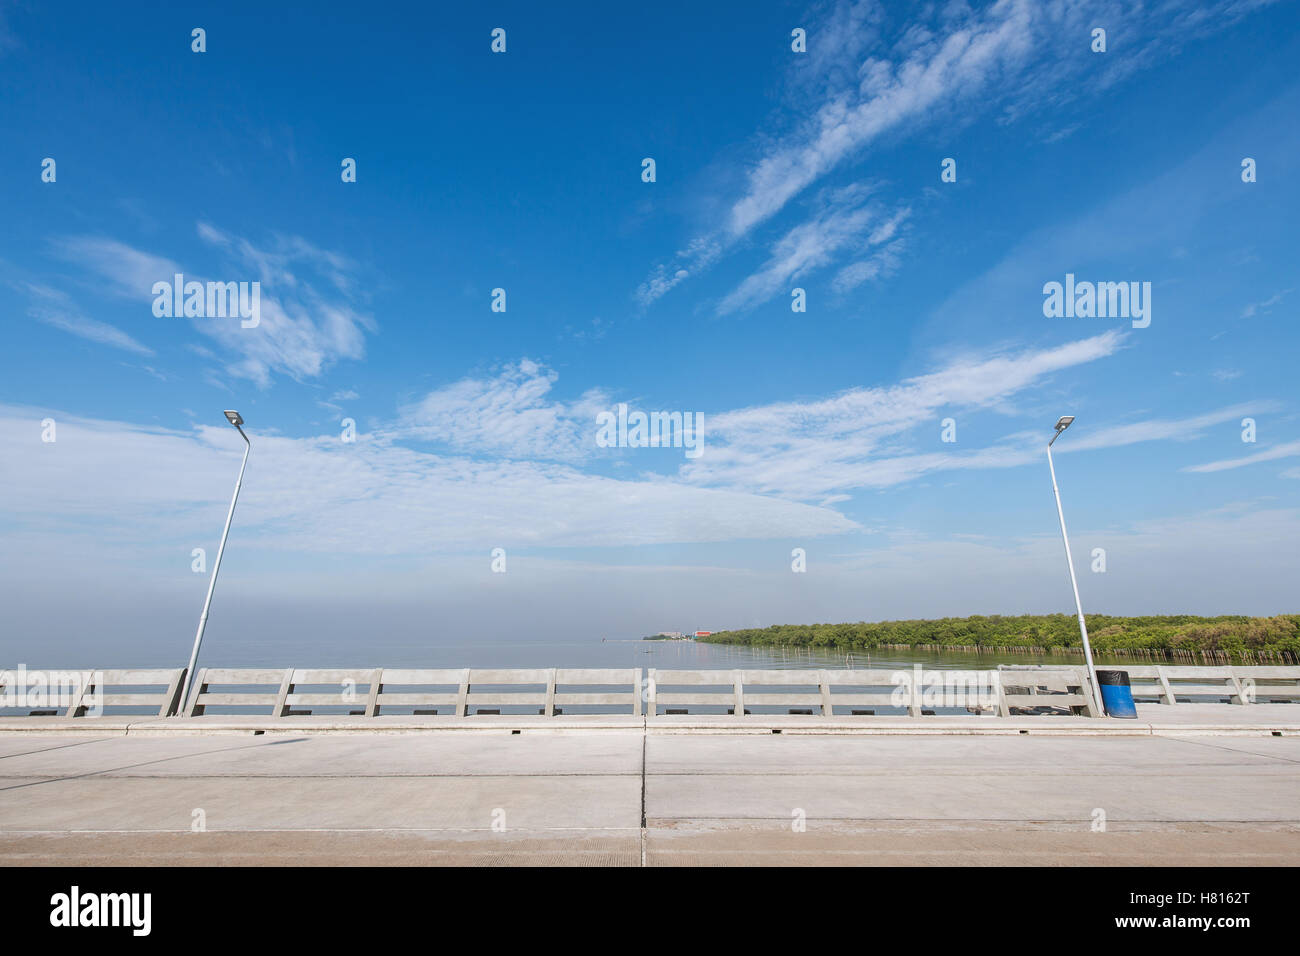 Reinigen Sie Strand-Brücke und Wanderweg mit zwei elektrischen Lichtmasten und blaue Tonne. Hintergrund ist blauer Himmel mit etwas Cloud. Stockfoto